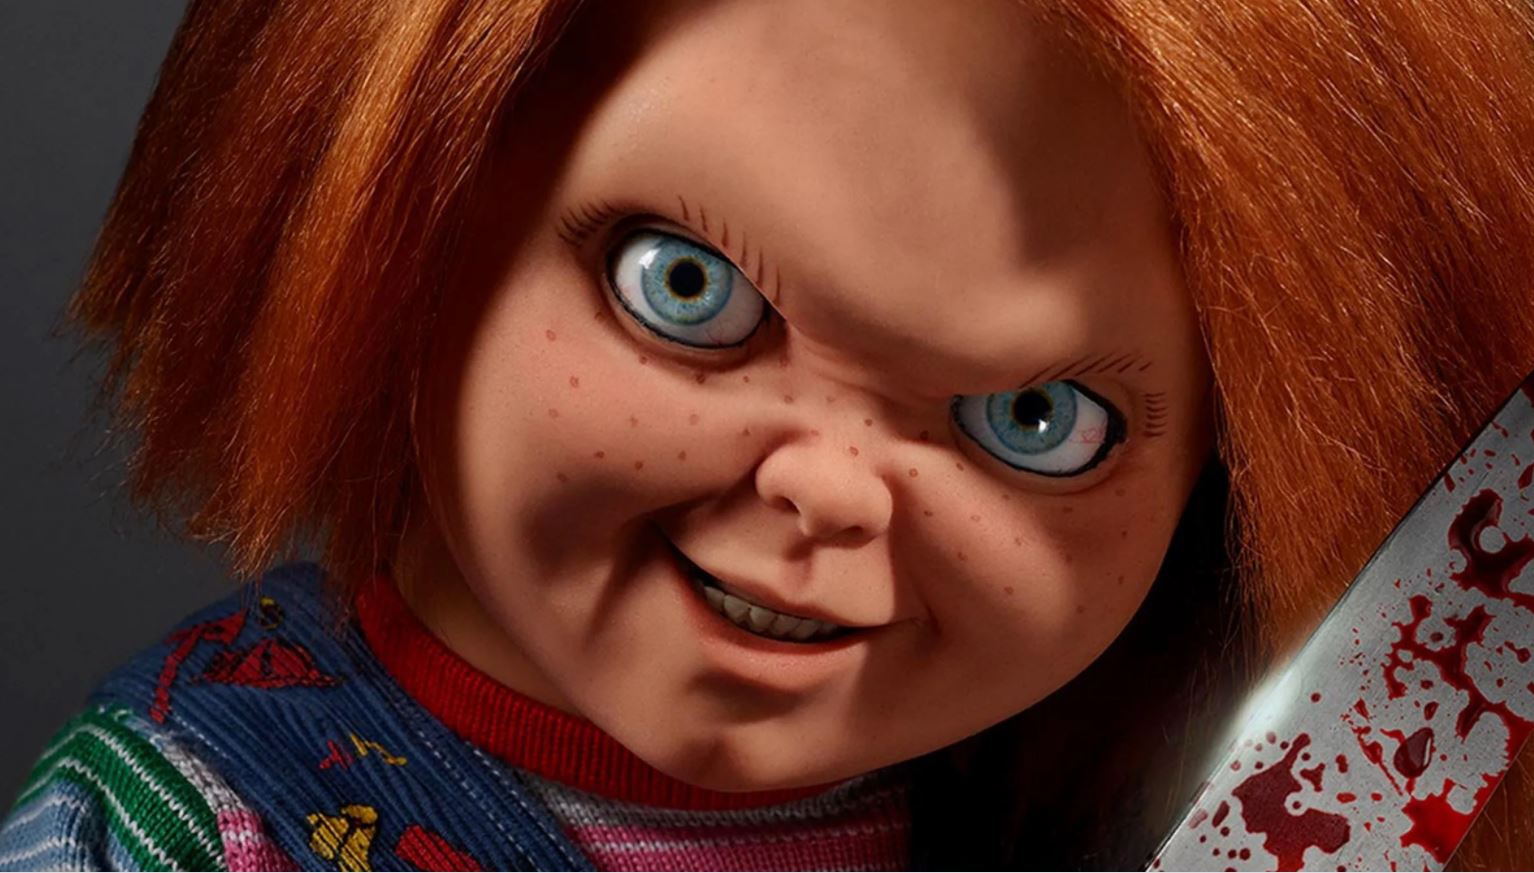  El nuevo avance de la serie Chucky muestra en detalle al muñeco diabólico